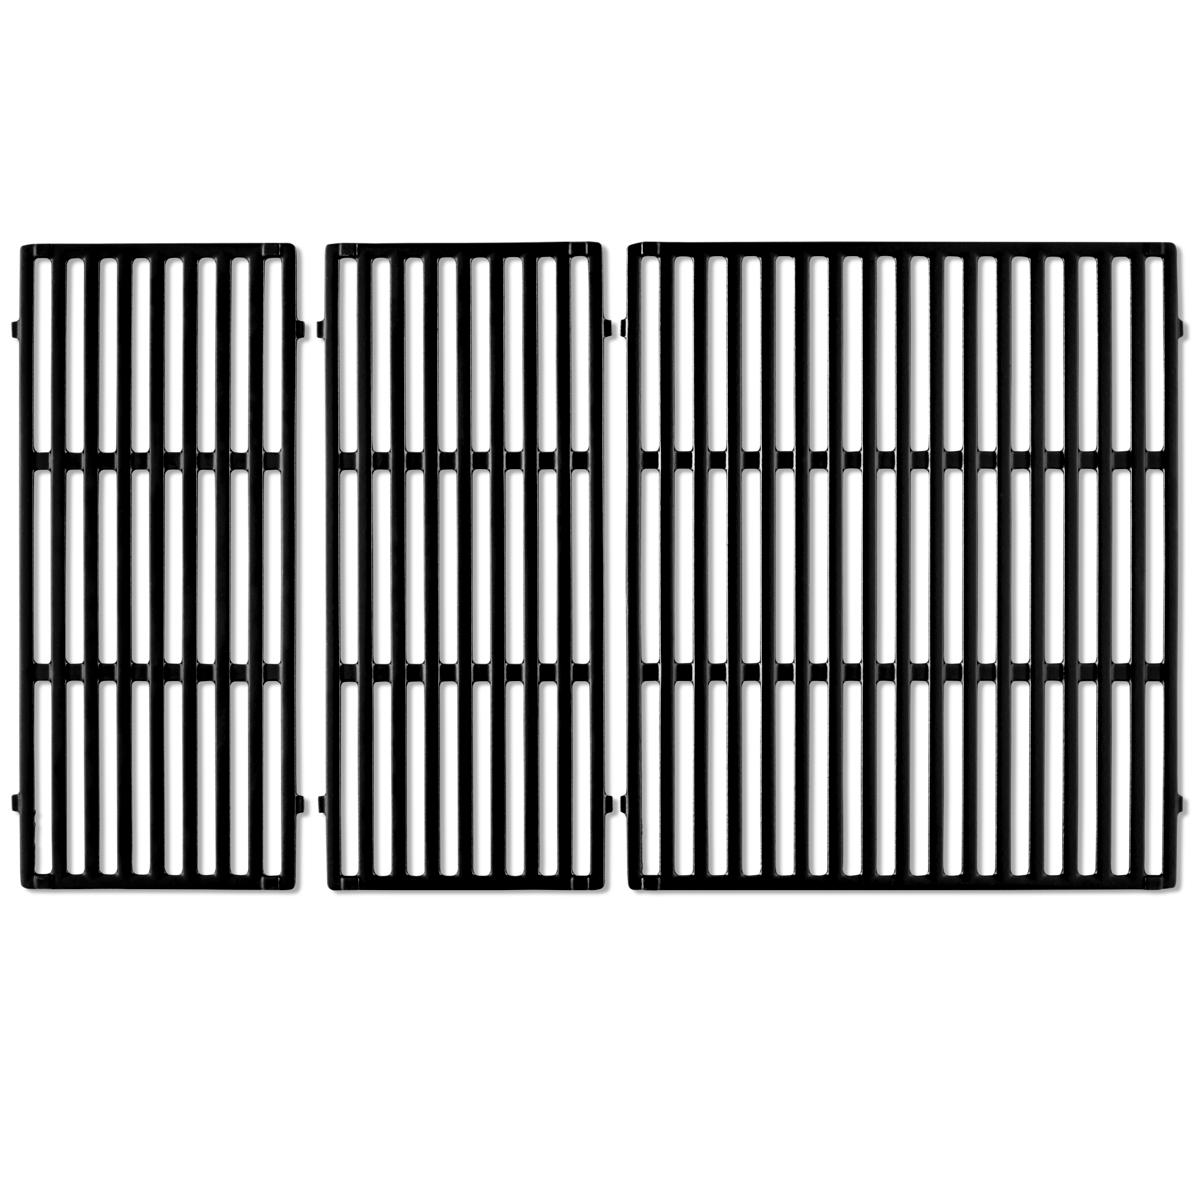 Фарфоровая эмалированная чугунная решетка Weber Crafted для гриля Genesis Series 400 черная (7854) фото 1